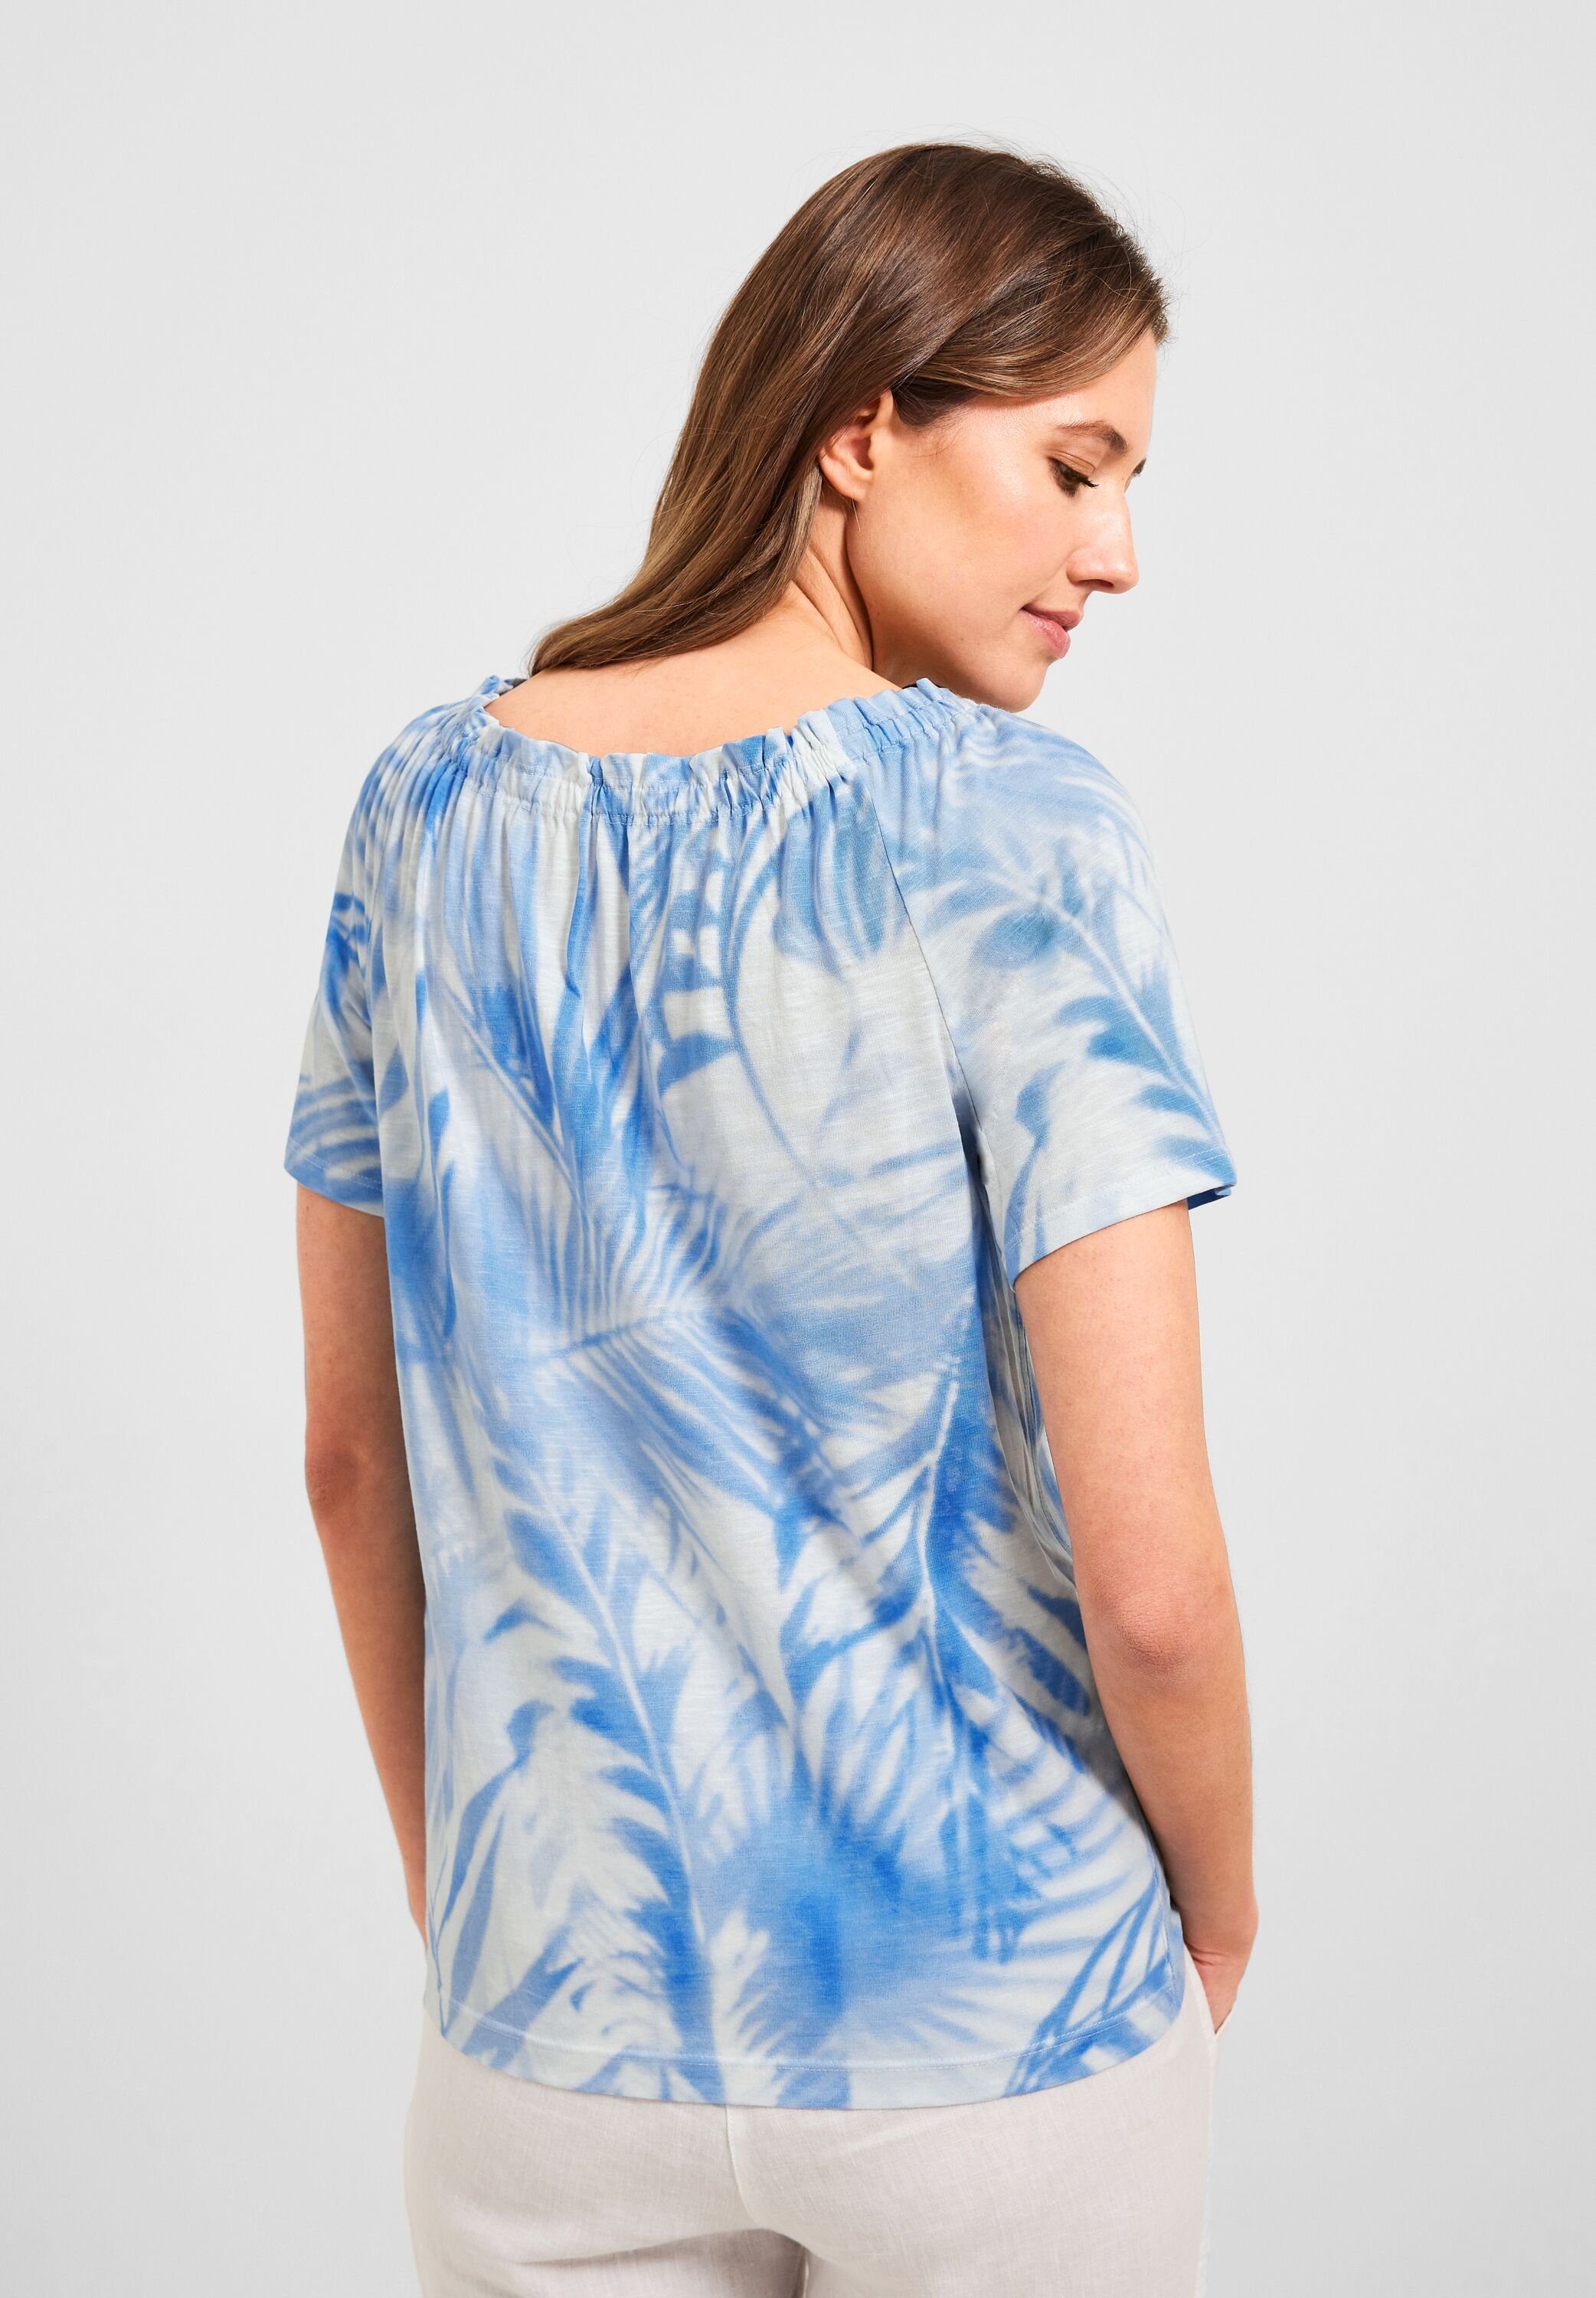 Materialmix aus Cecil softem T-Shirt